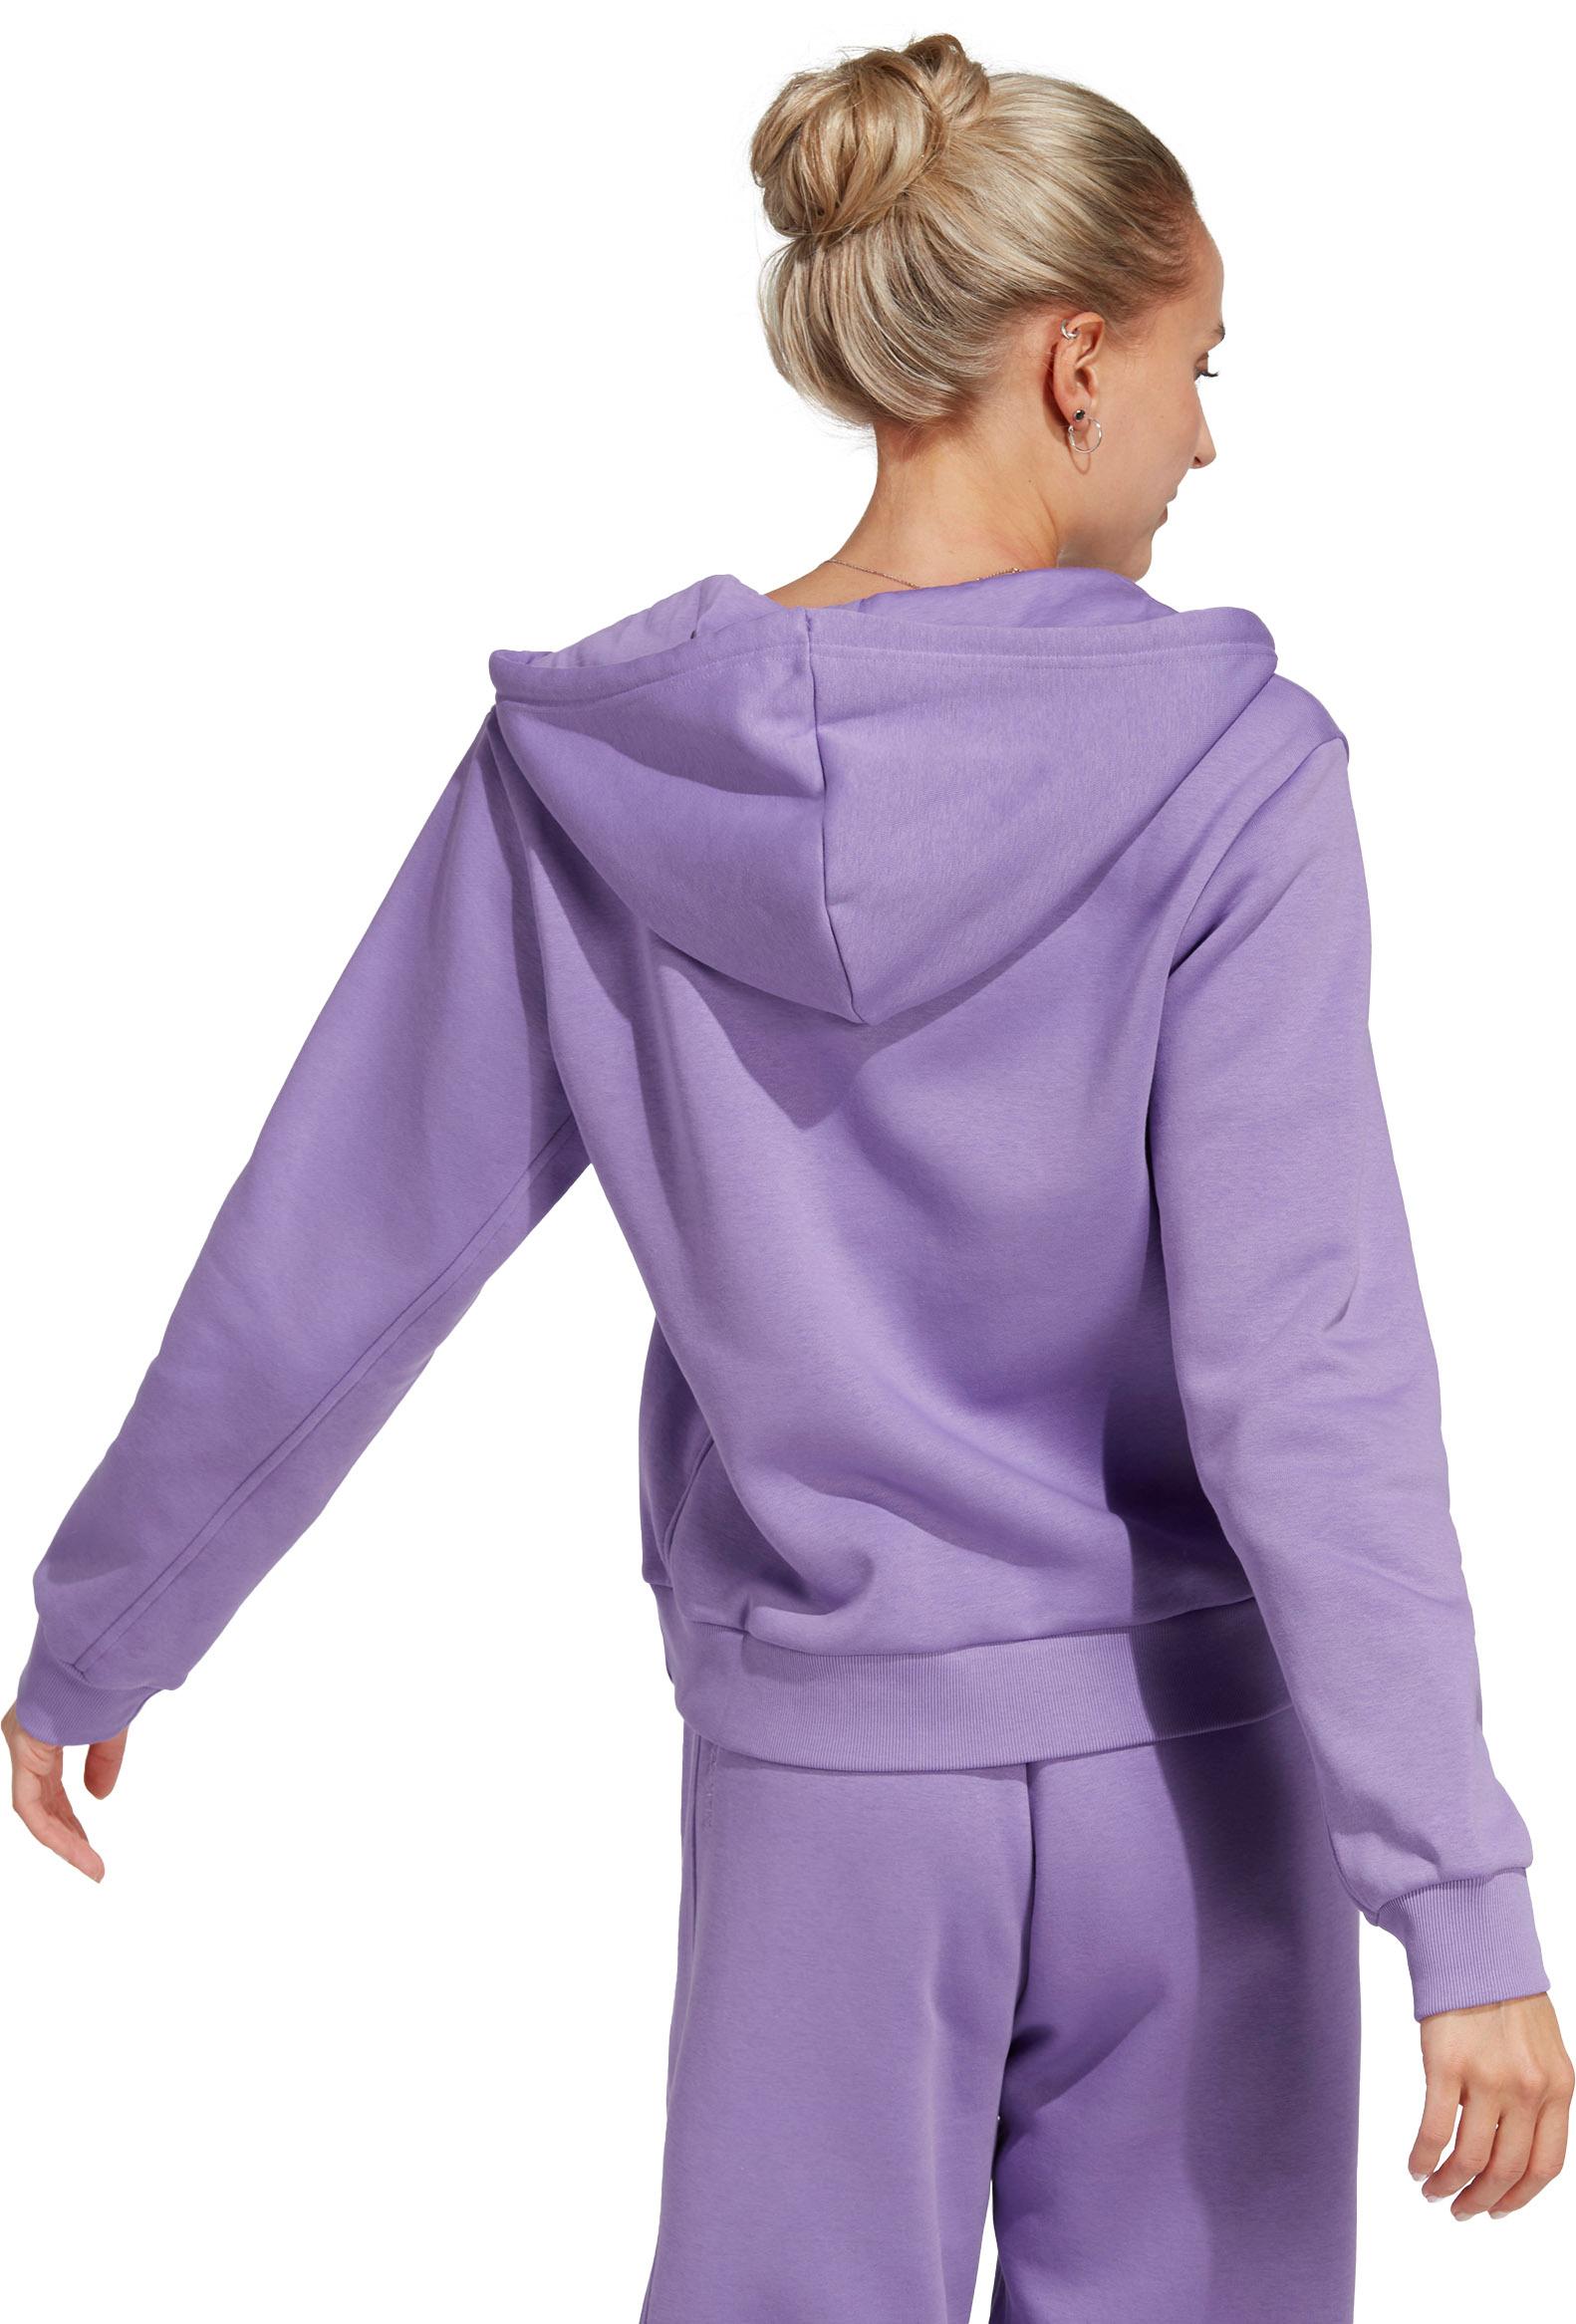 Adidas All Szn Sweatjacke Damen kaufen SportScheck Online im Shop von fusion violet